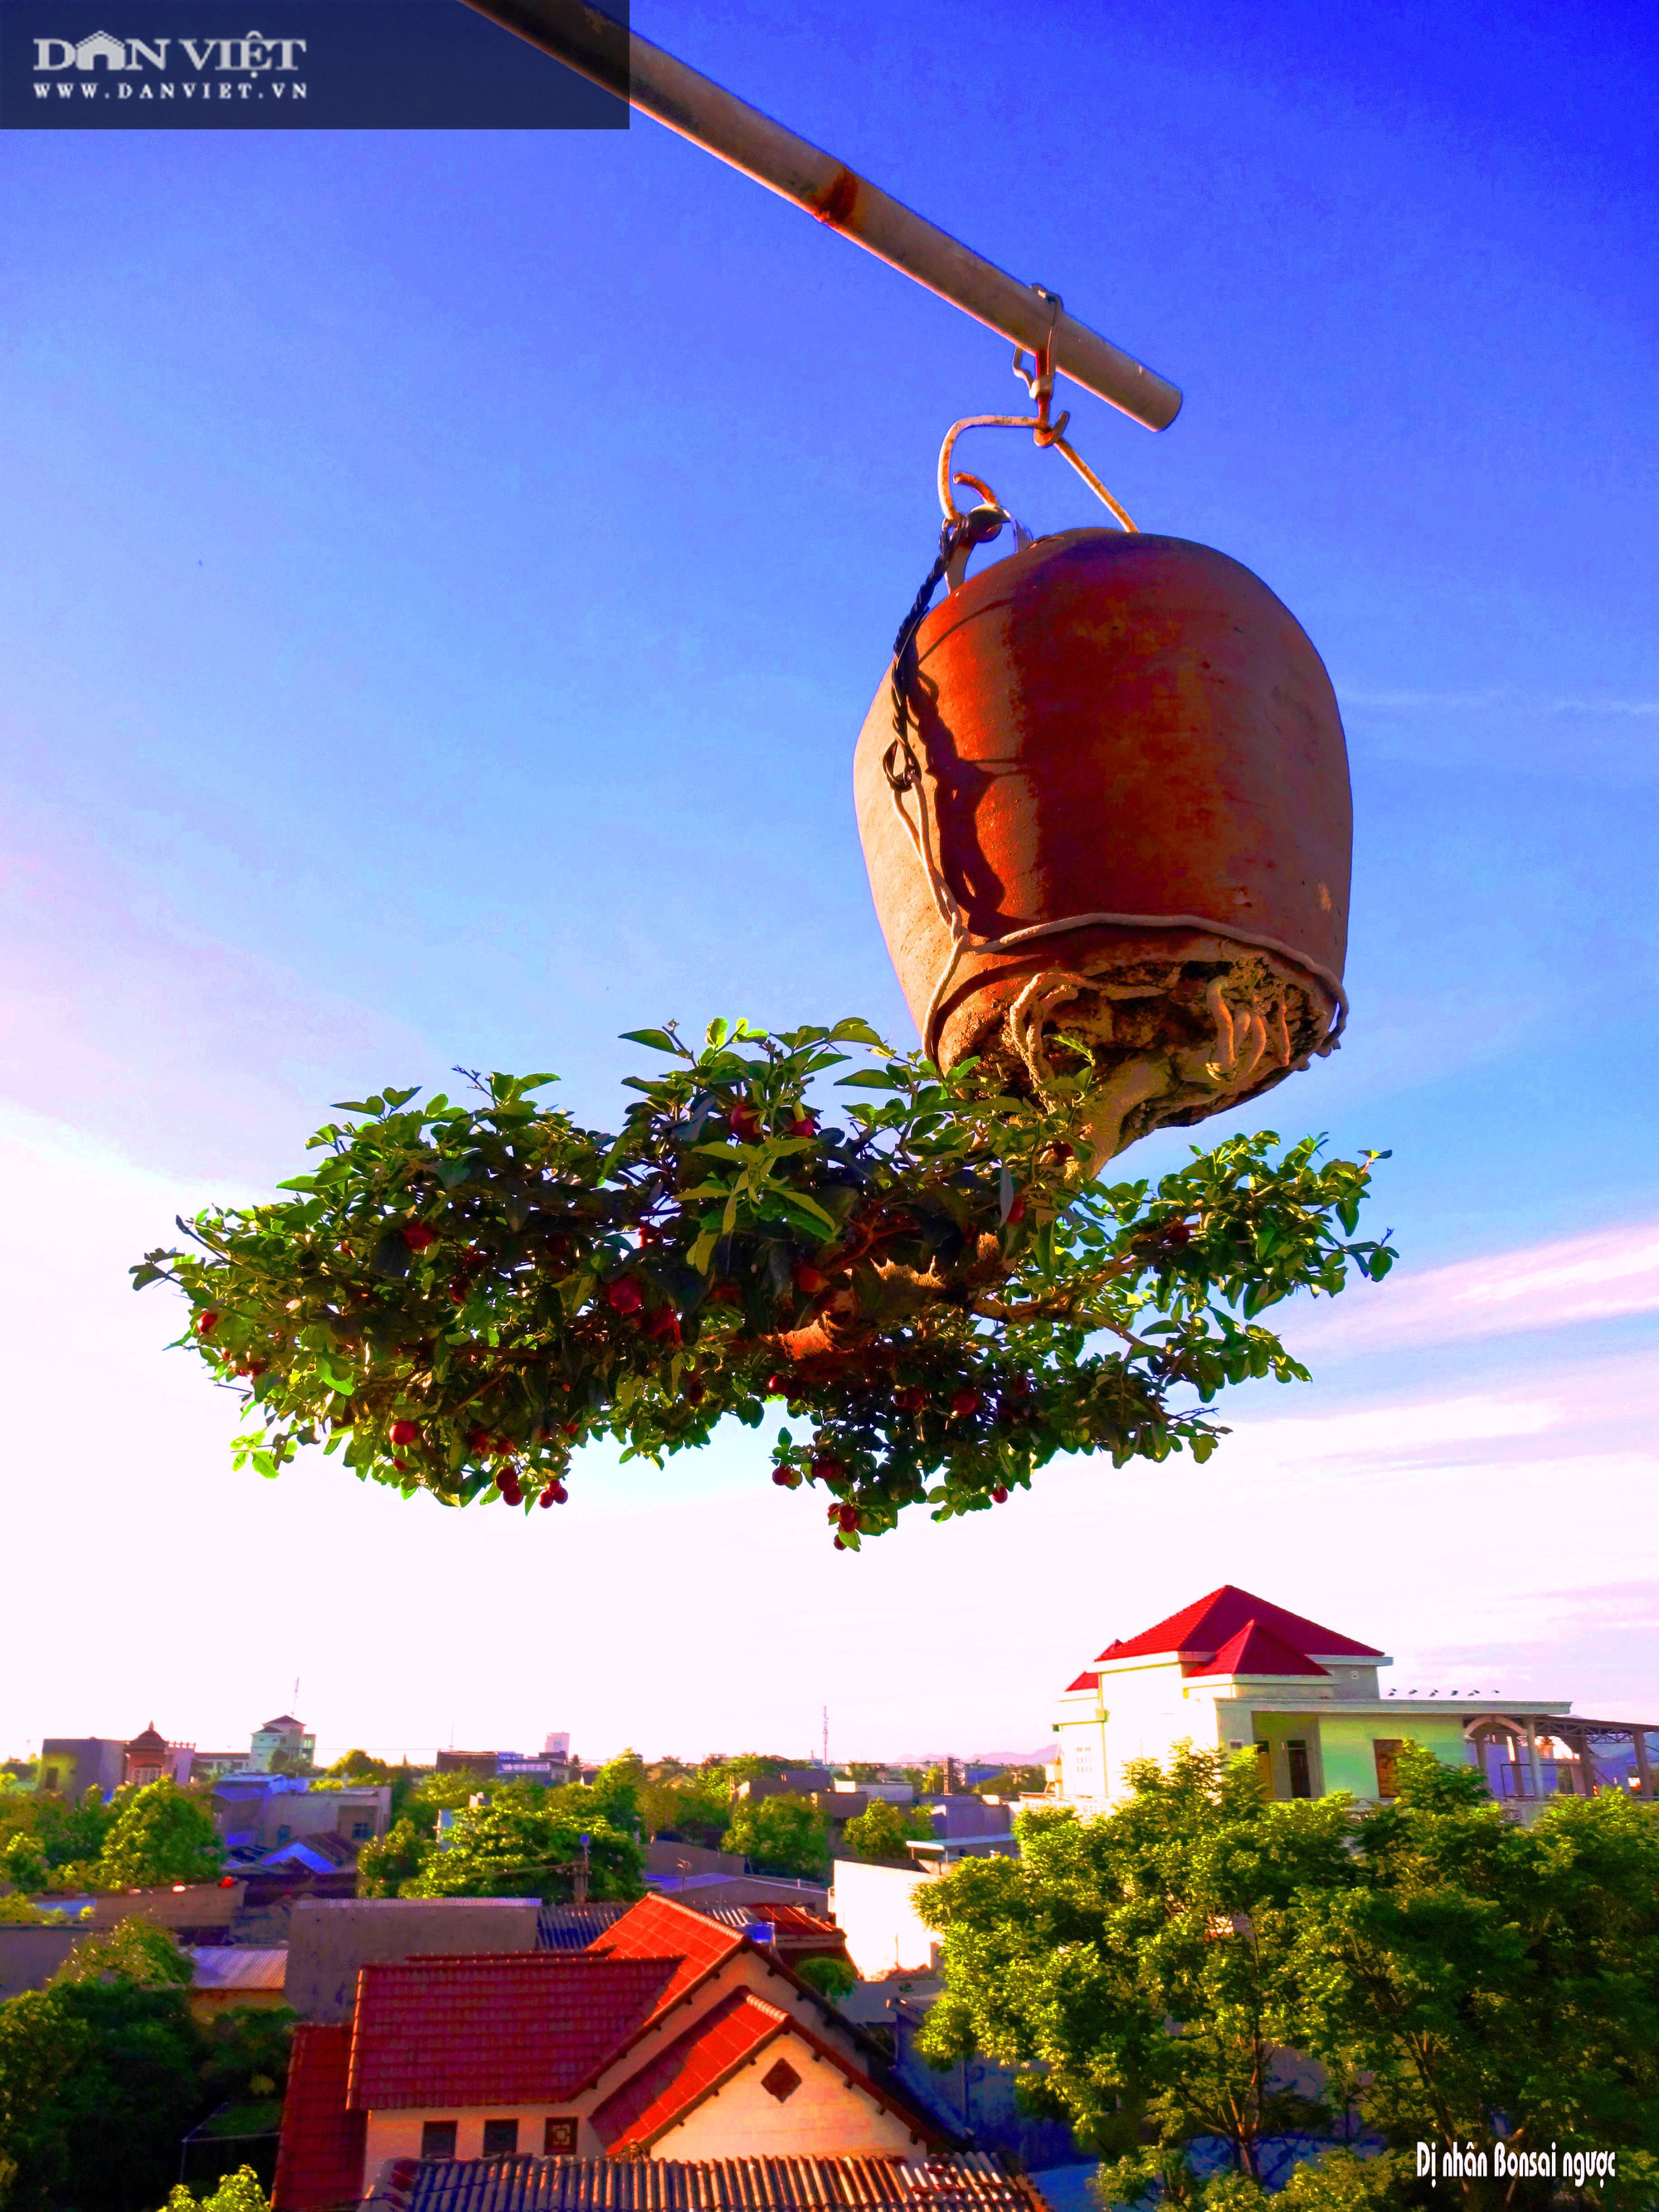 Dị nhân ở Quảng Nam có hàng trăm cây bonsai ngược được xác nhận kỷ lục Việt Nam - Ảnh 4.